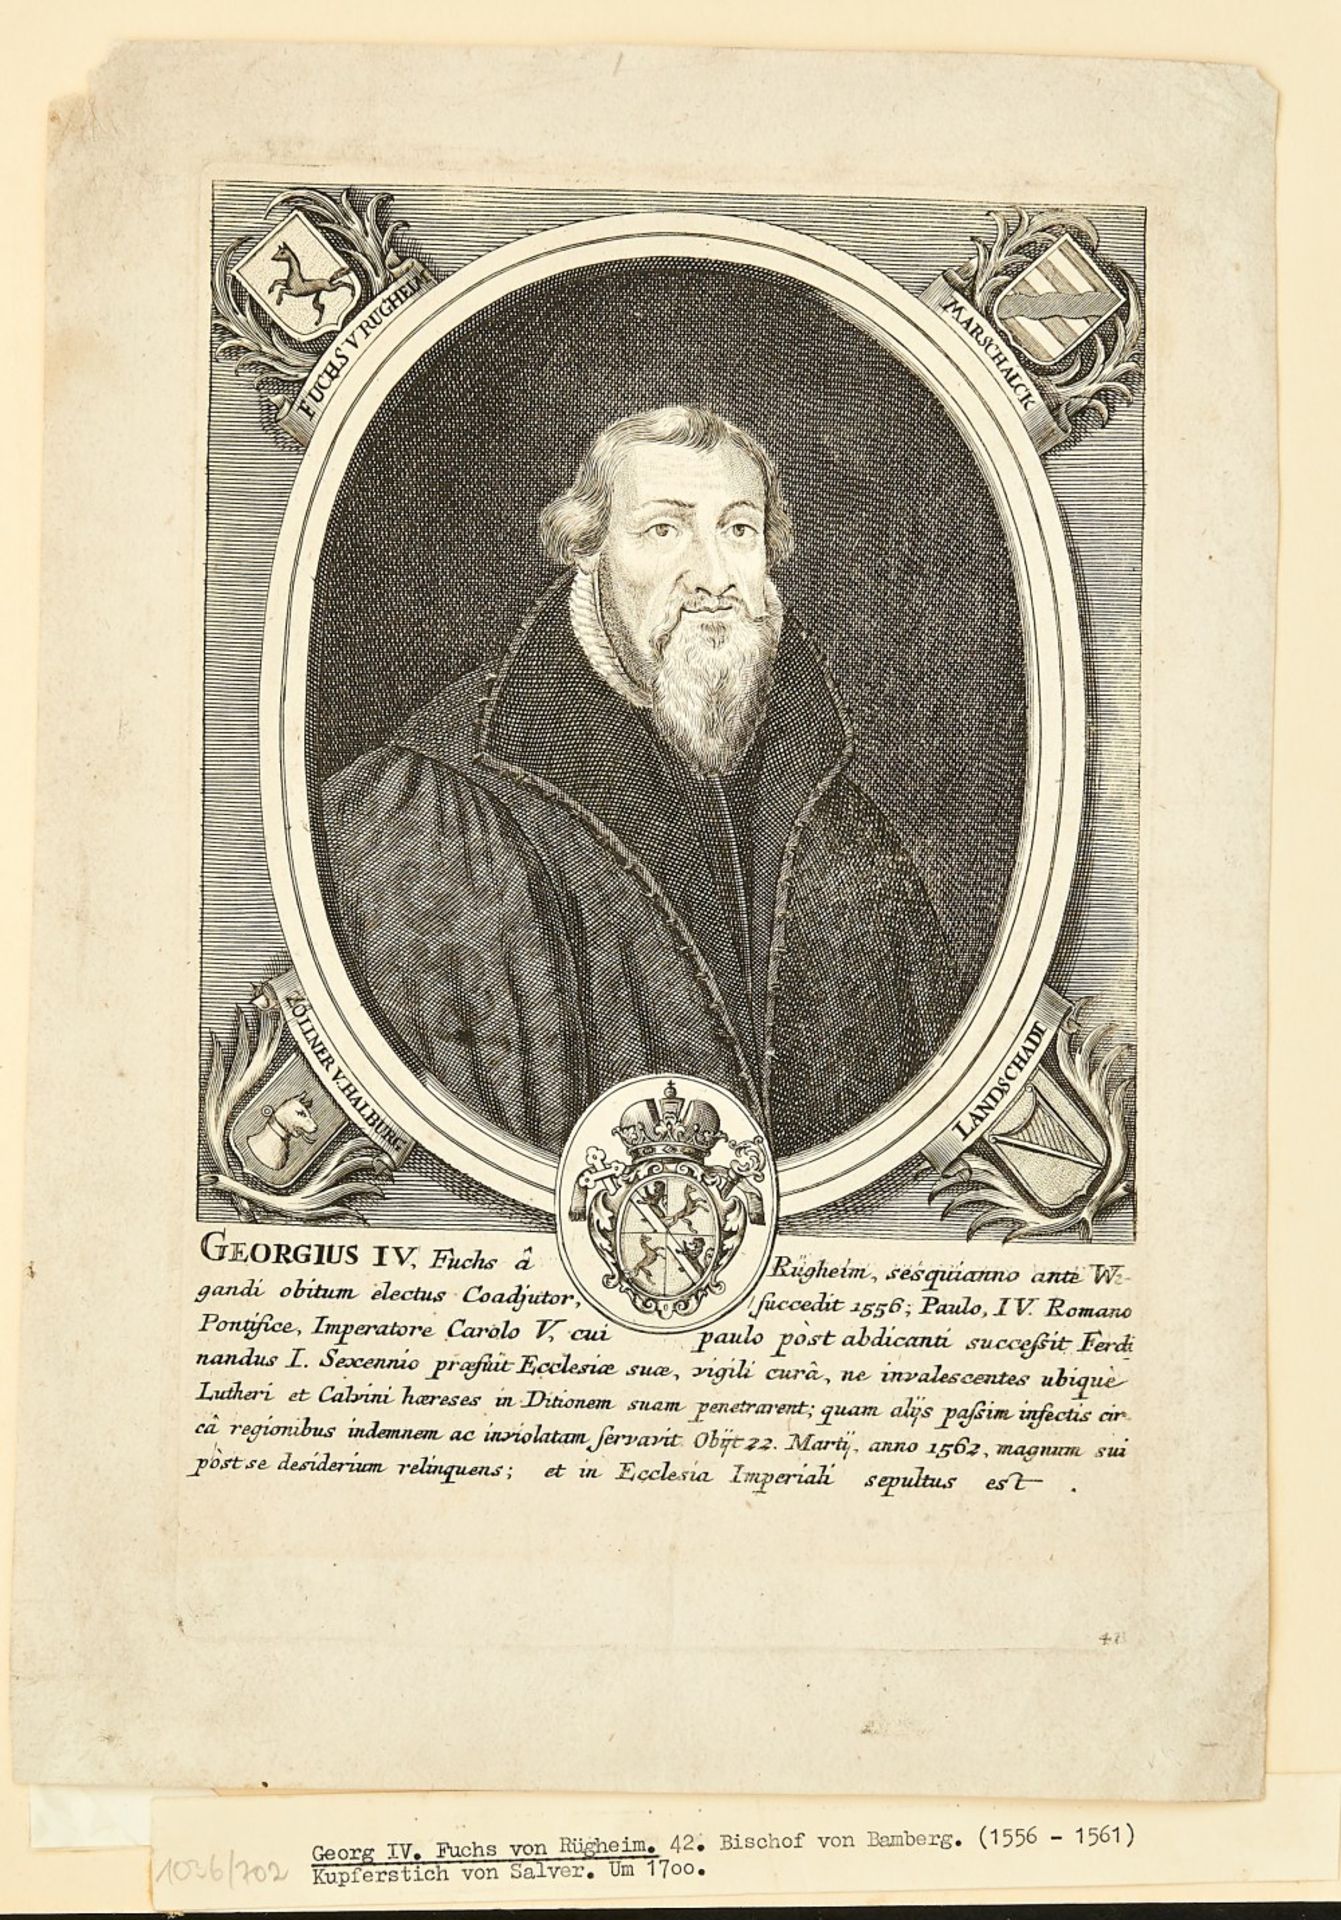 Georgius IV Fuchs von Rügheim